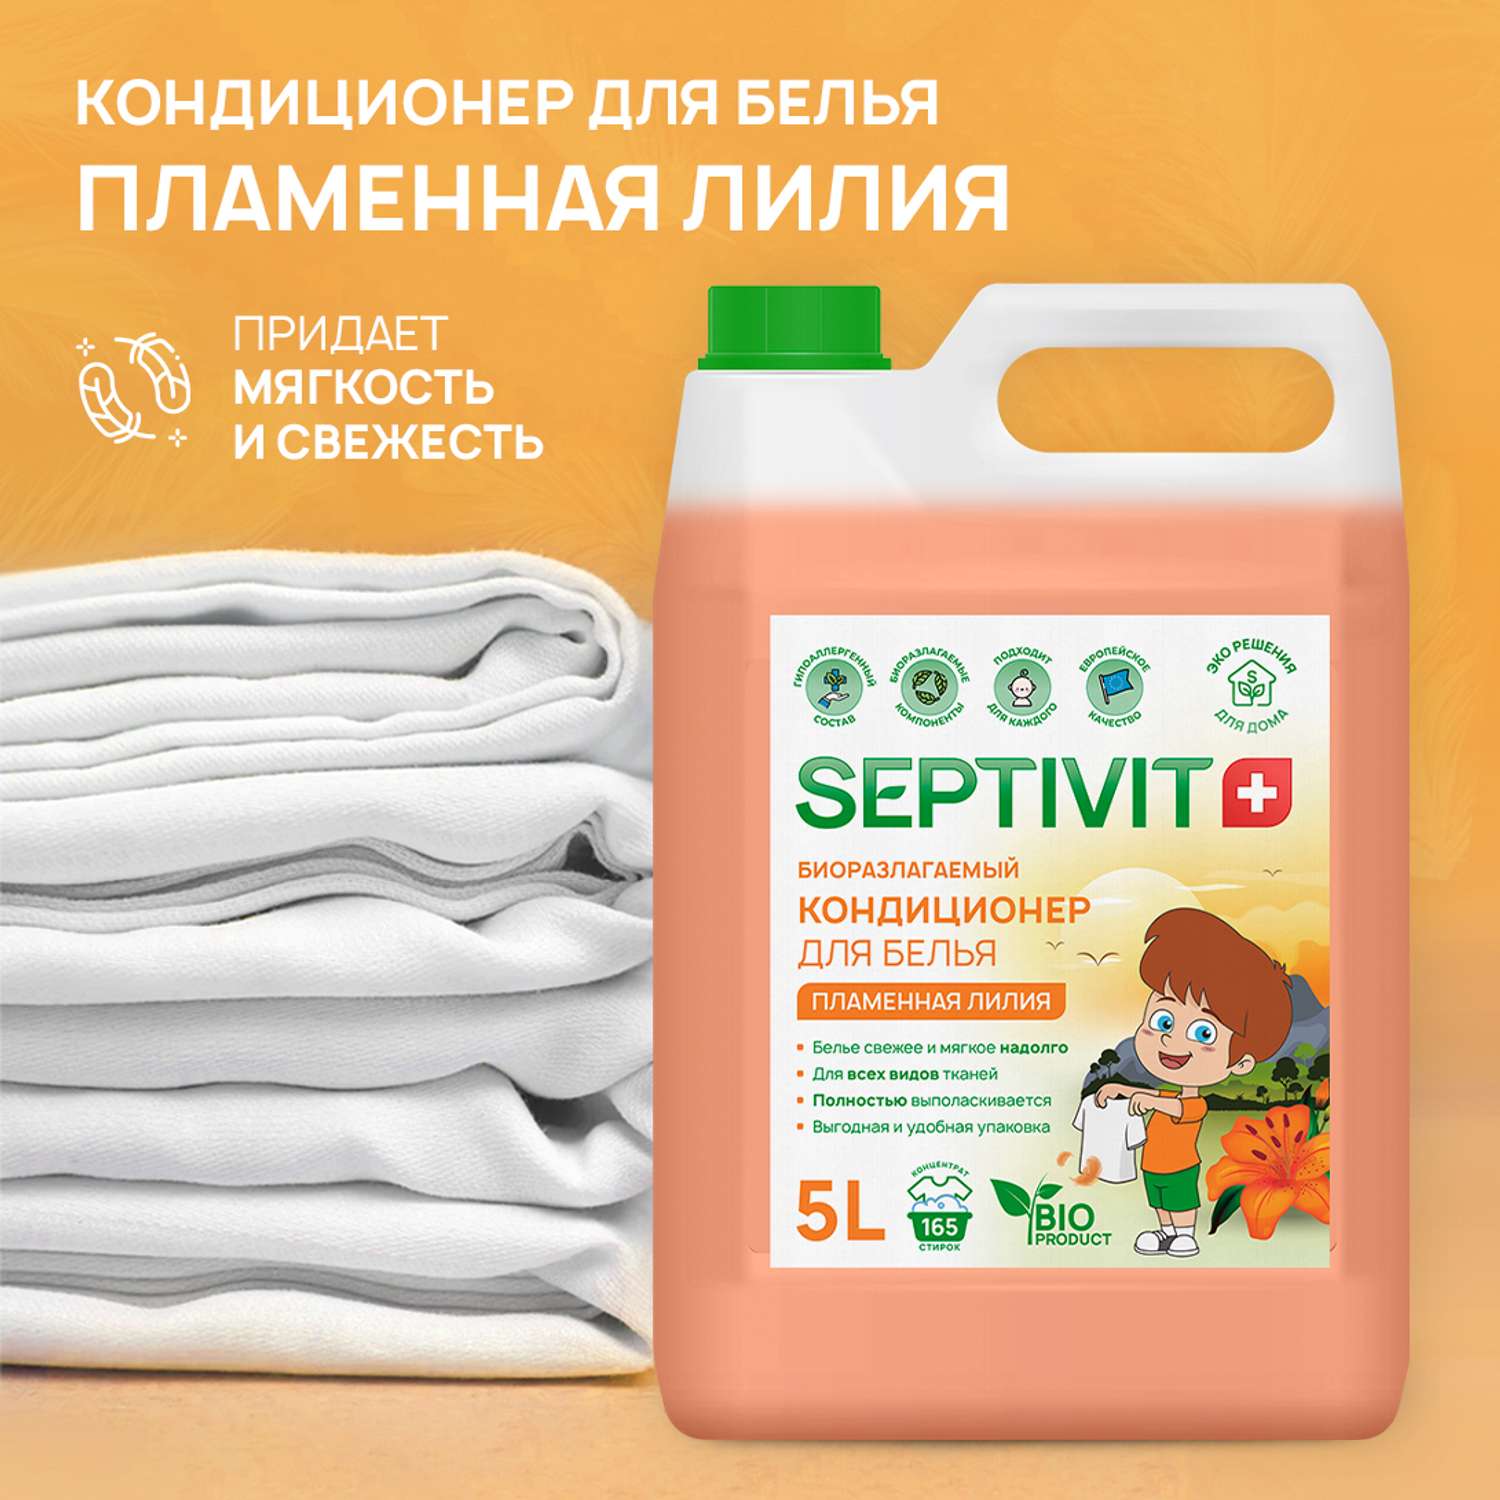 Кондиционер для белья SEPTIVIT Premium 5л с ароматом Пламенная лилия - фото 2